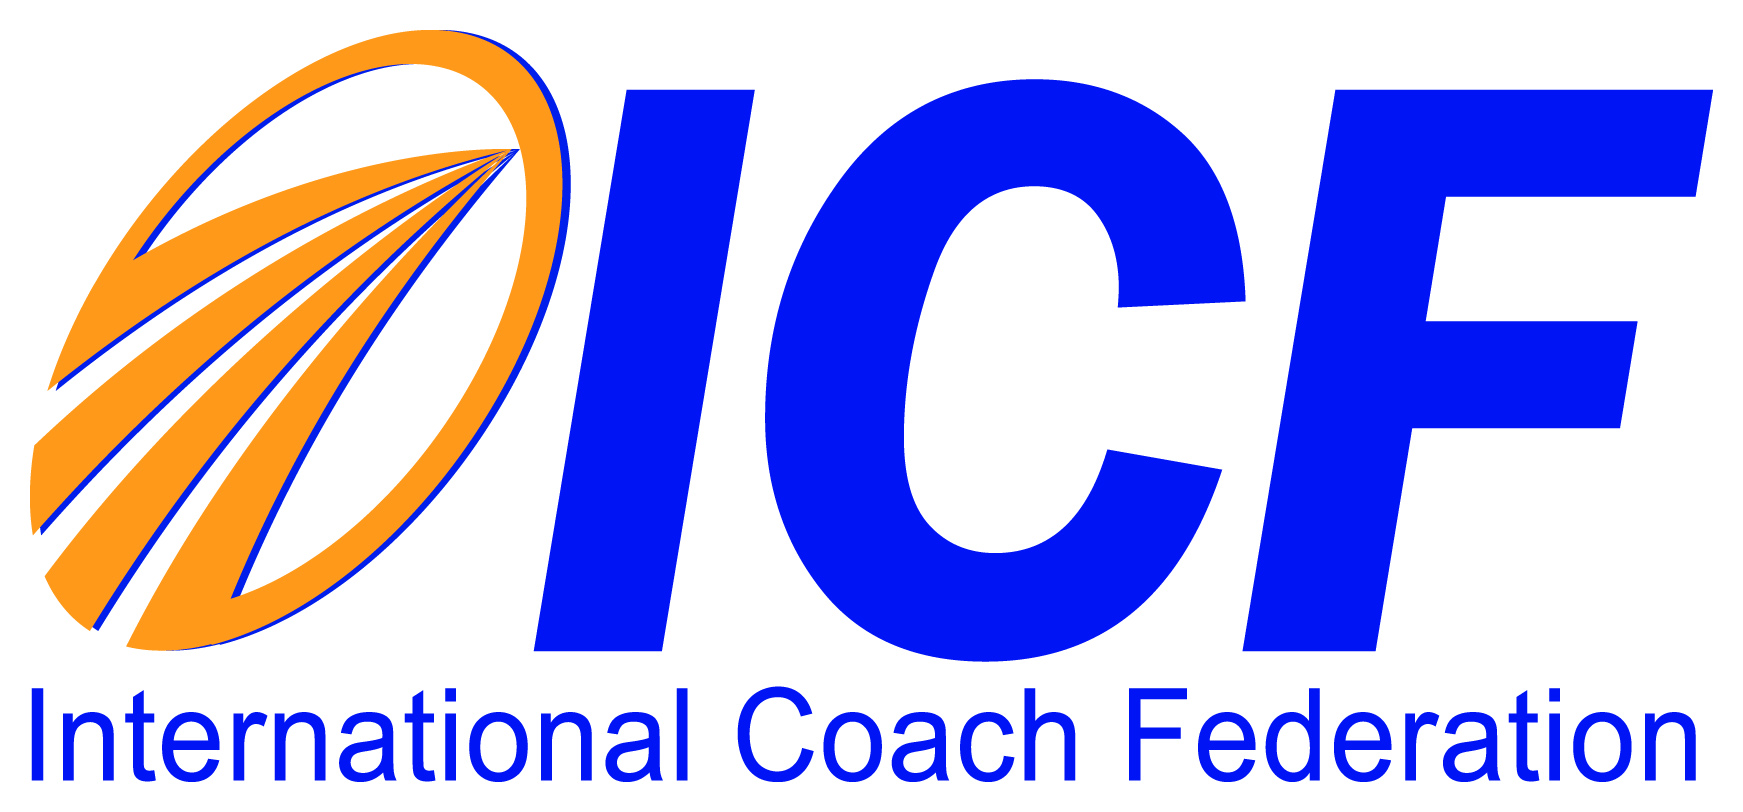 ICF Credentialed Coach, Thom Qafzezi, Molto Crescendo, Miami, Fort Lauderdale, Florida